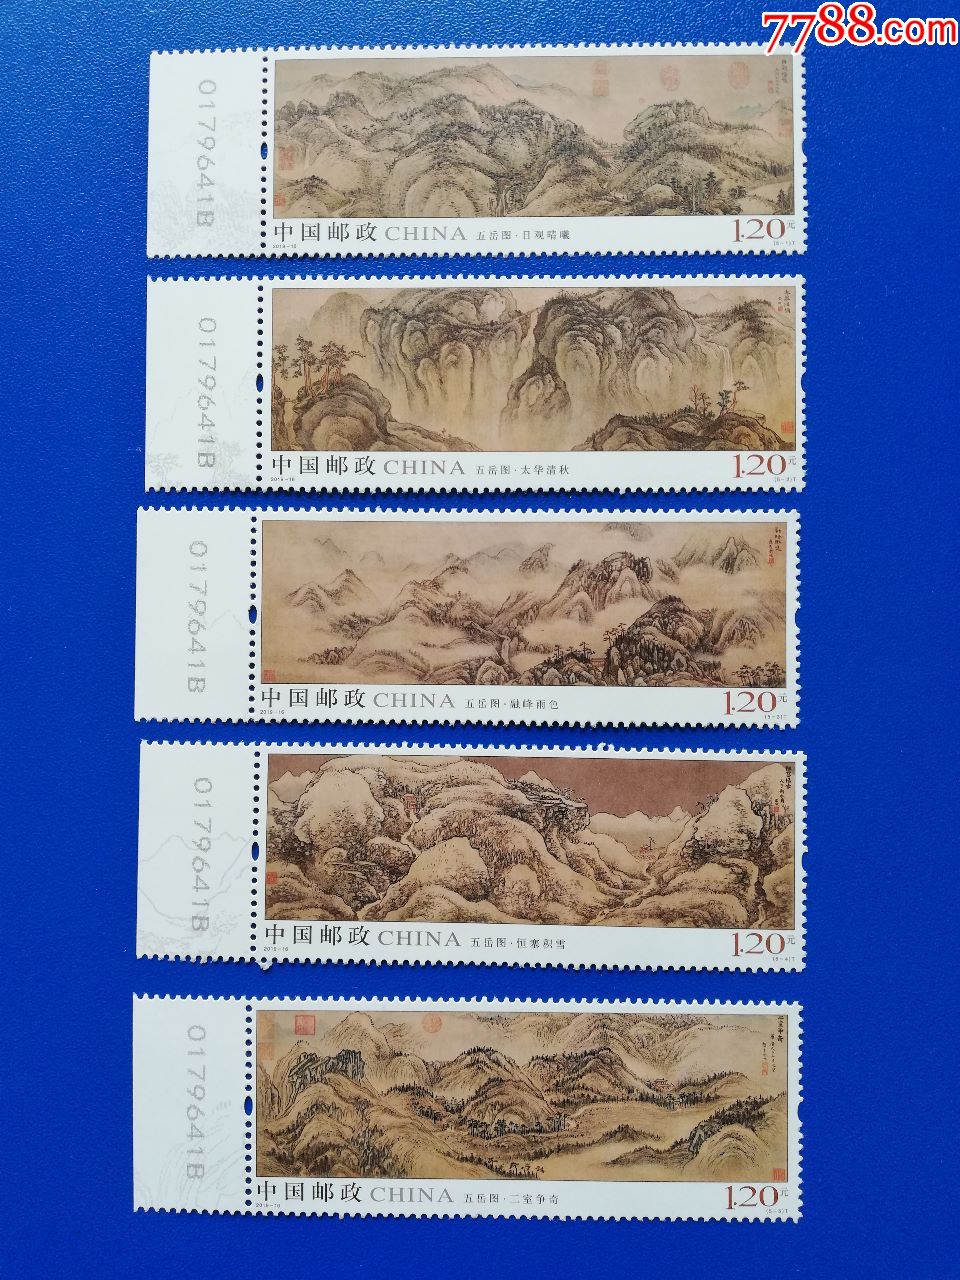 2019-16五岳图邮票新全原胶全品左边数字全同号